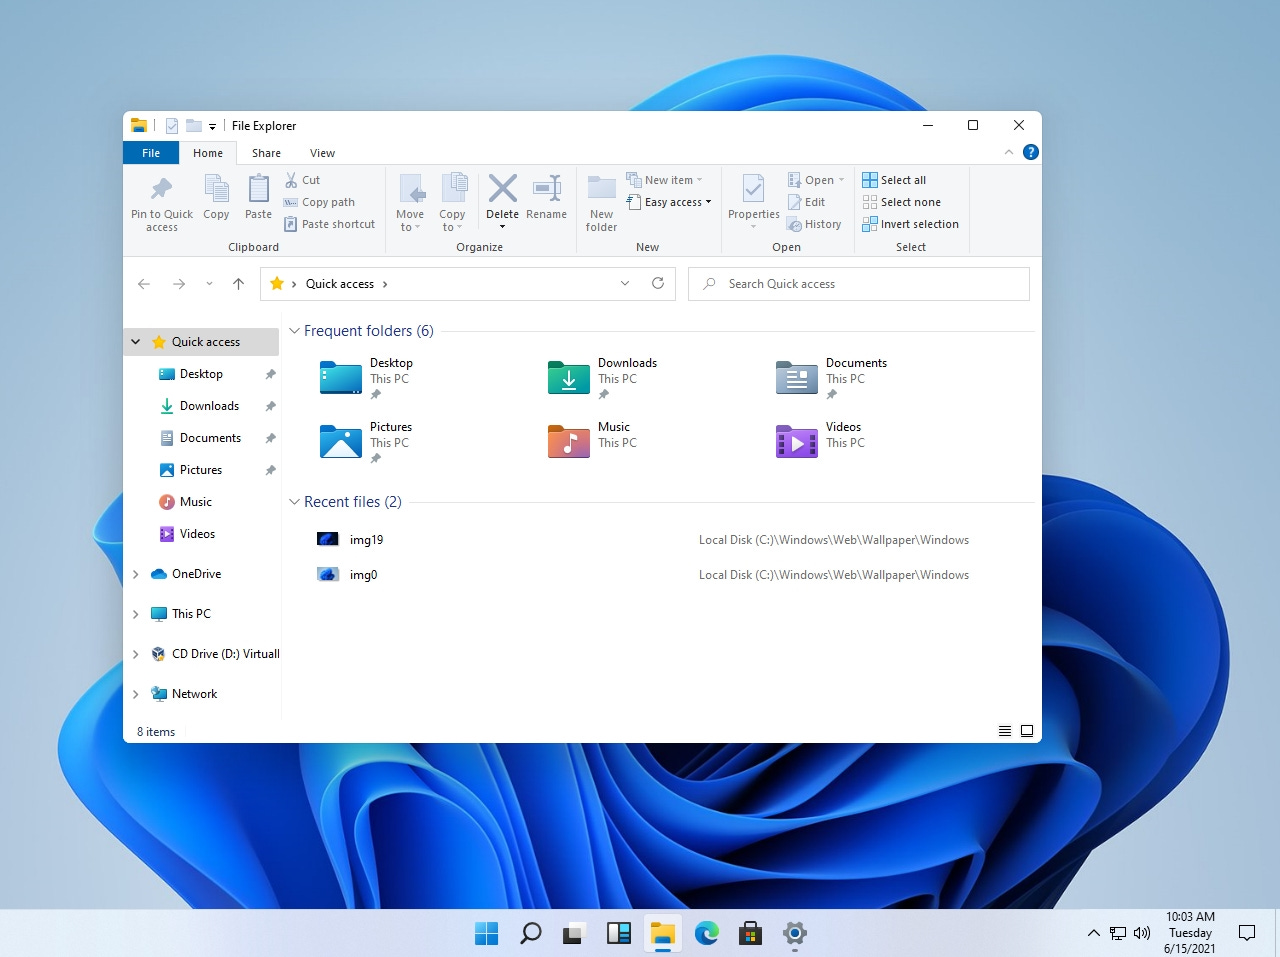 Podrás instalar Windows 11 en tu actual ordenador? | Tecnología -  ComputerHoy.com